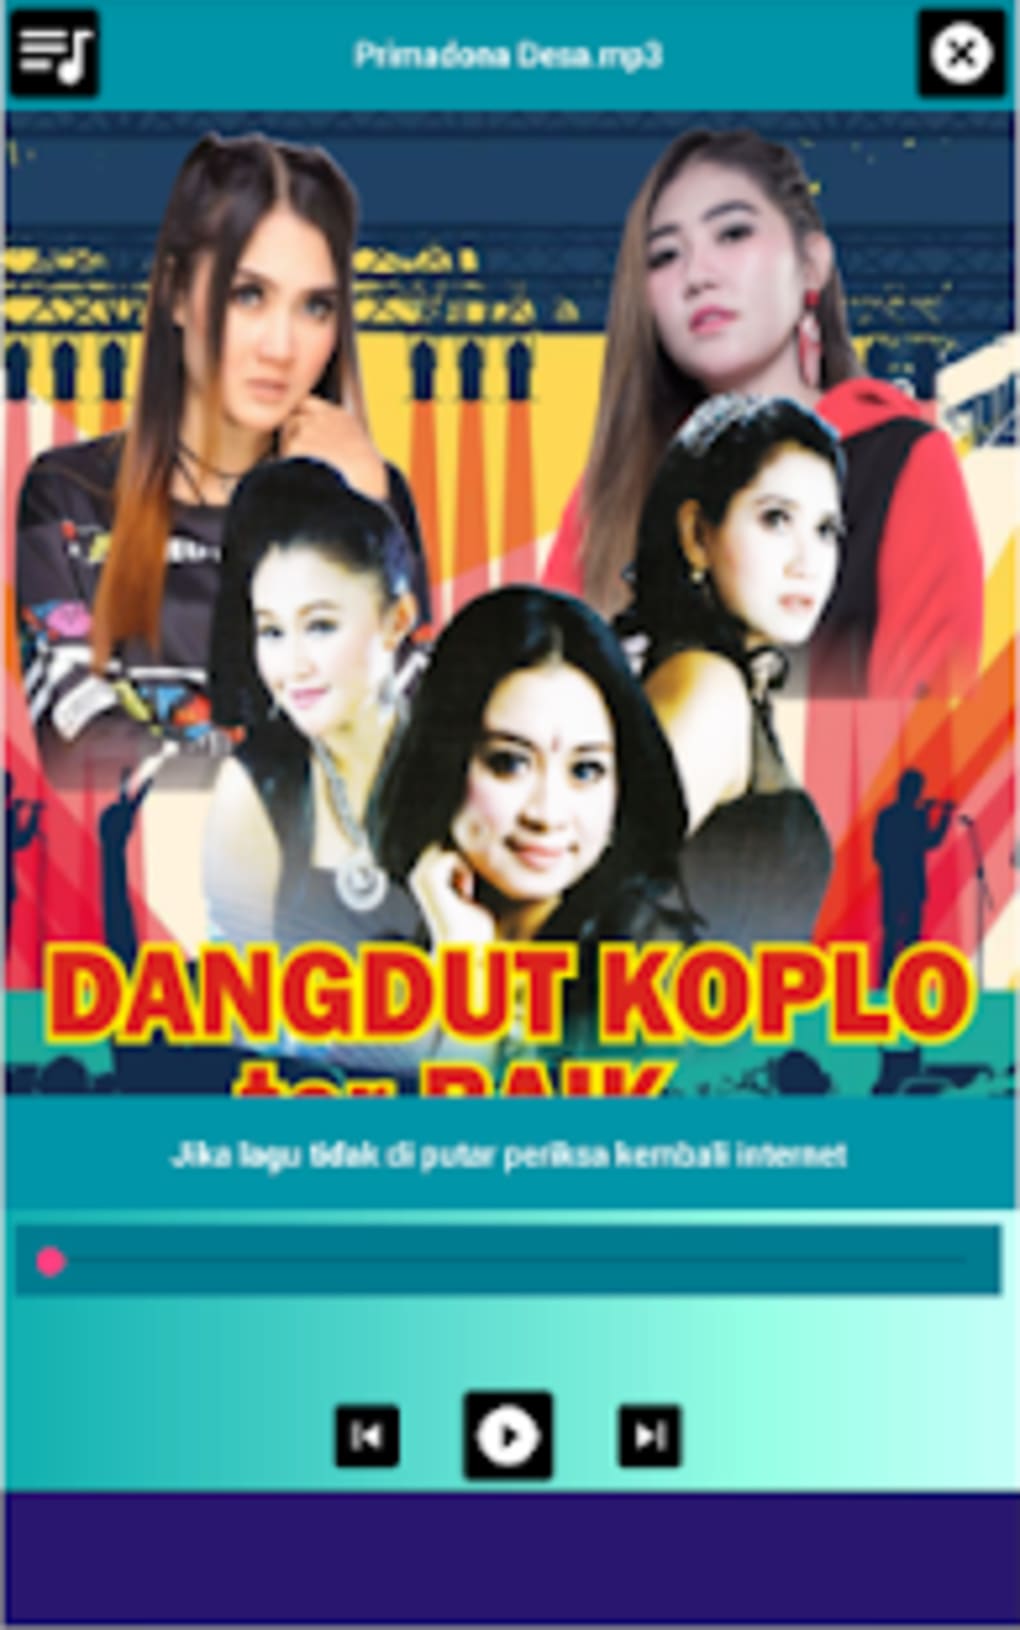 kumpulan midi song dangdut koplo download 2018